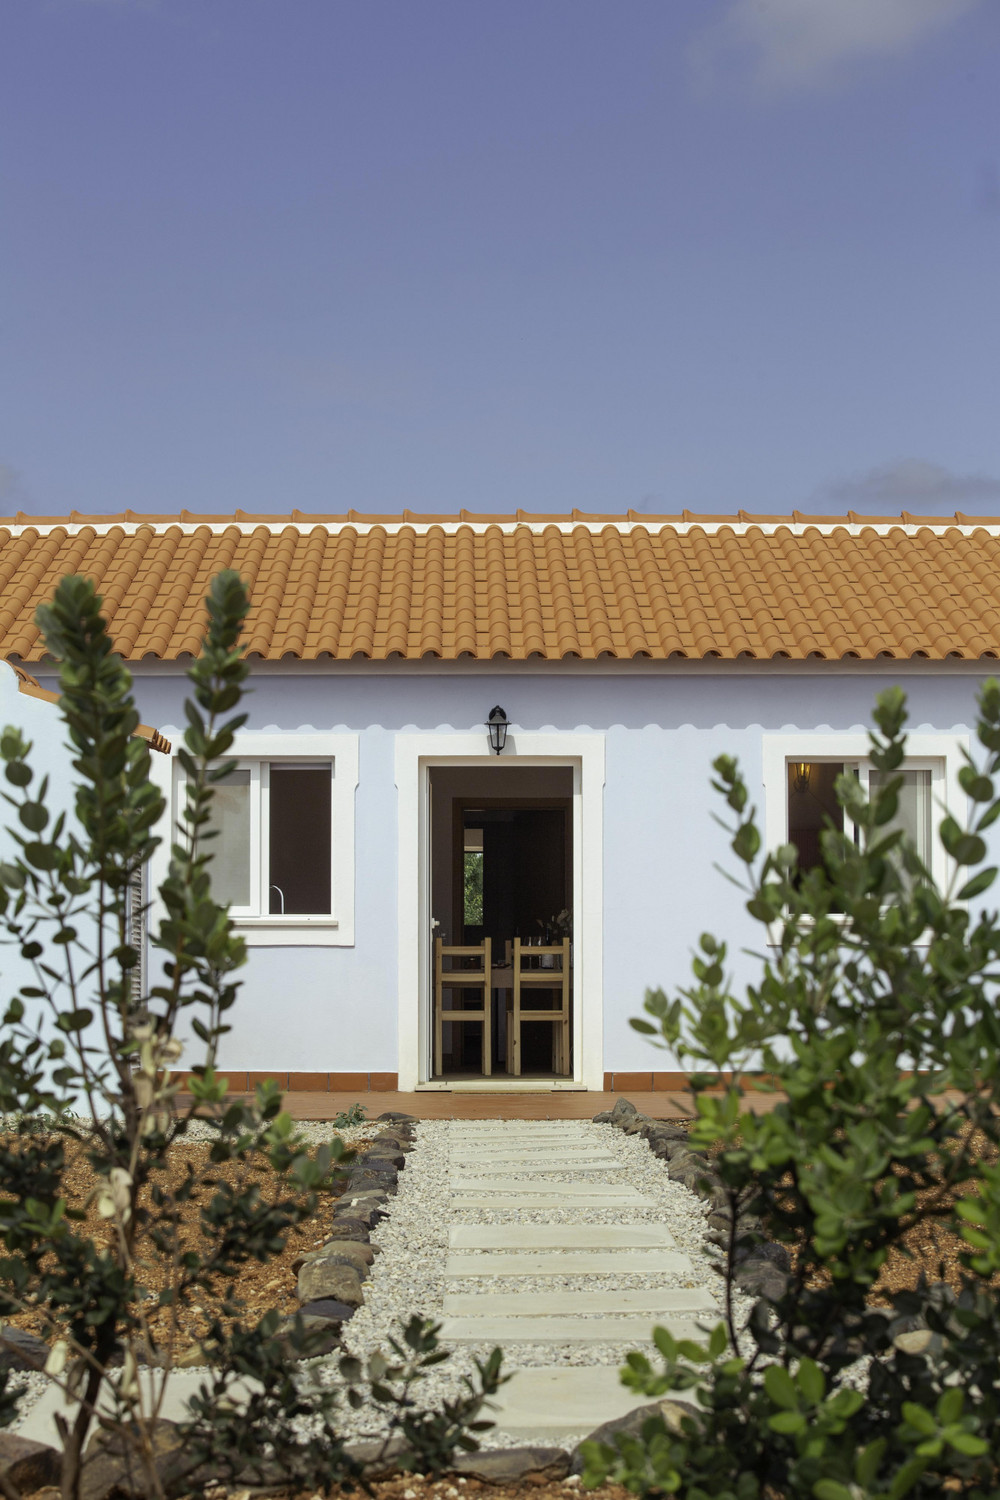 Al-Farroba Rural Accommodation in Central Algarve